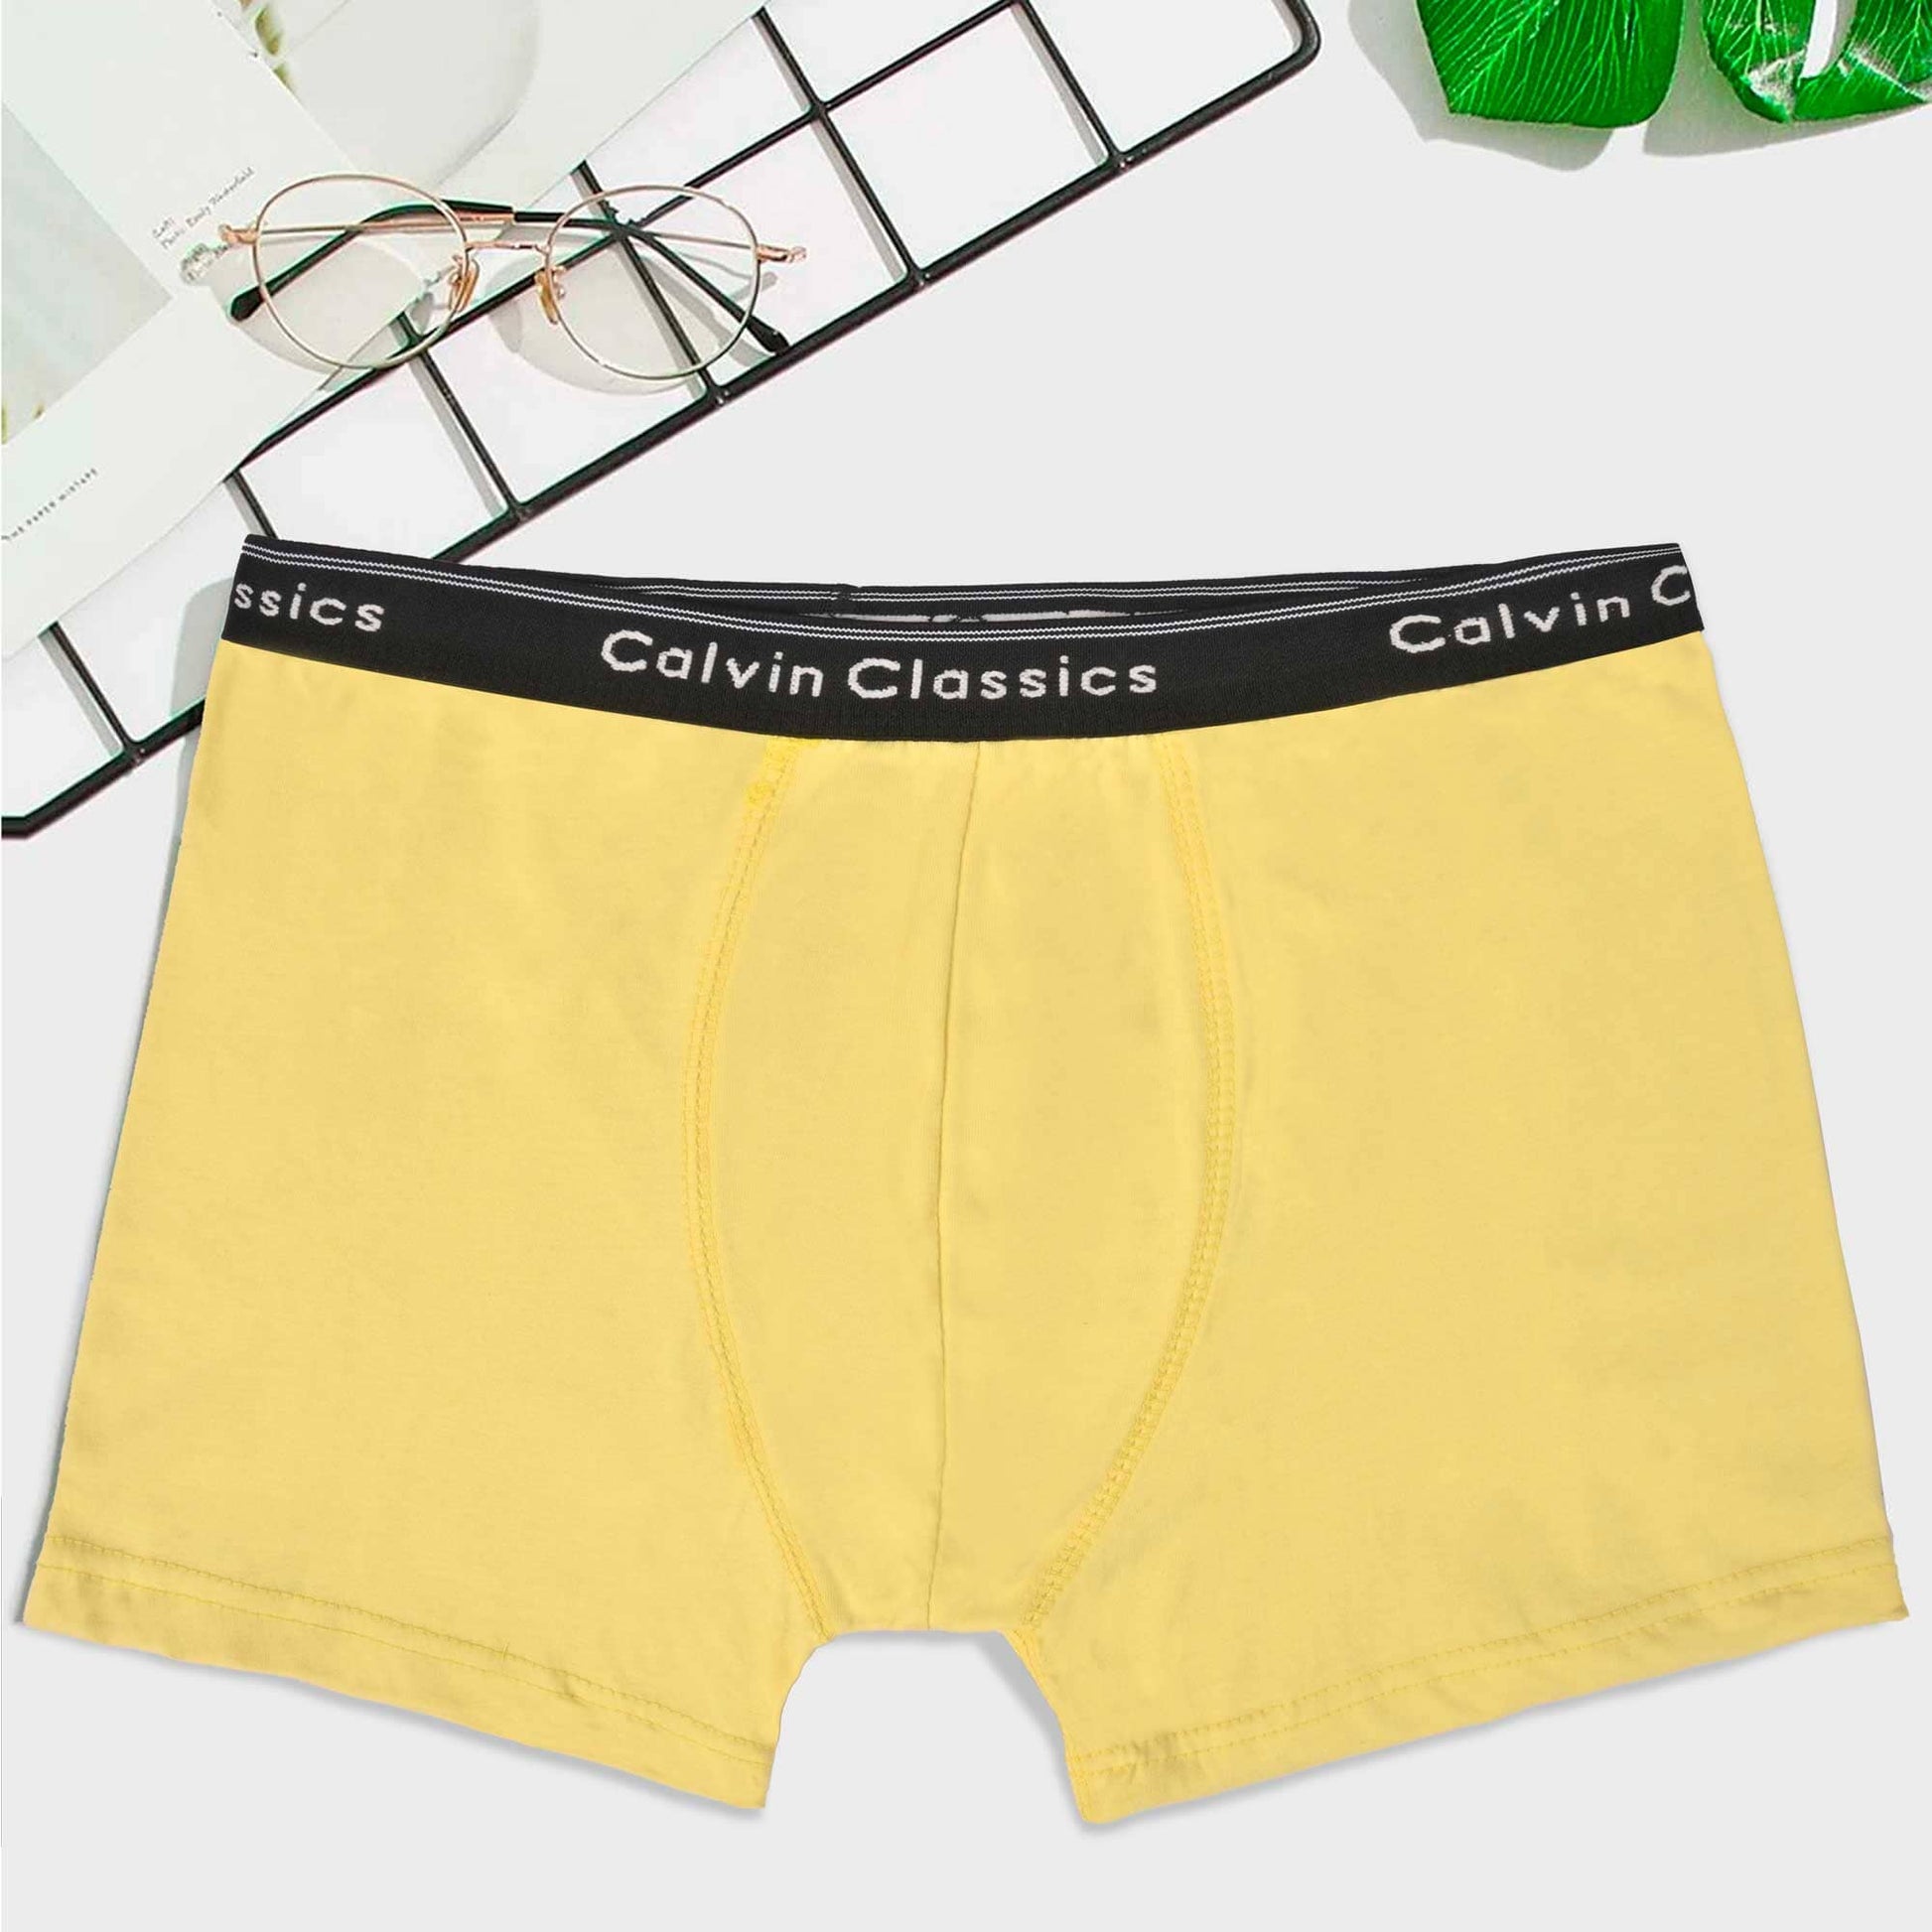 Calvin Classic Men's Boxer Shorts Men's Underwear SZK Lime Yellow S 